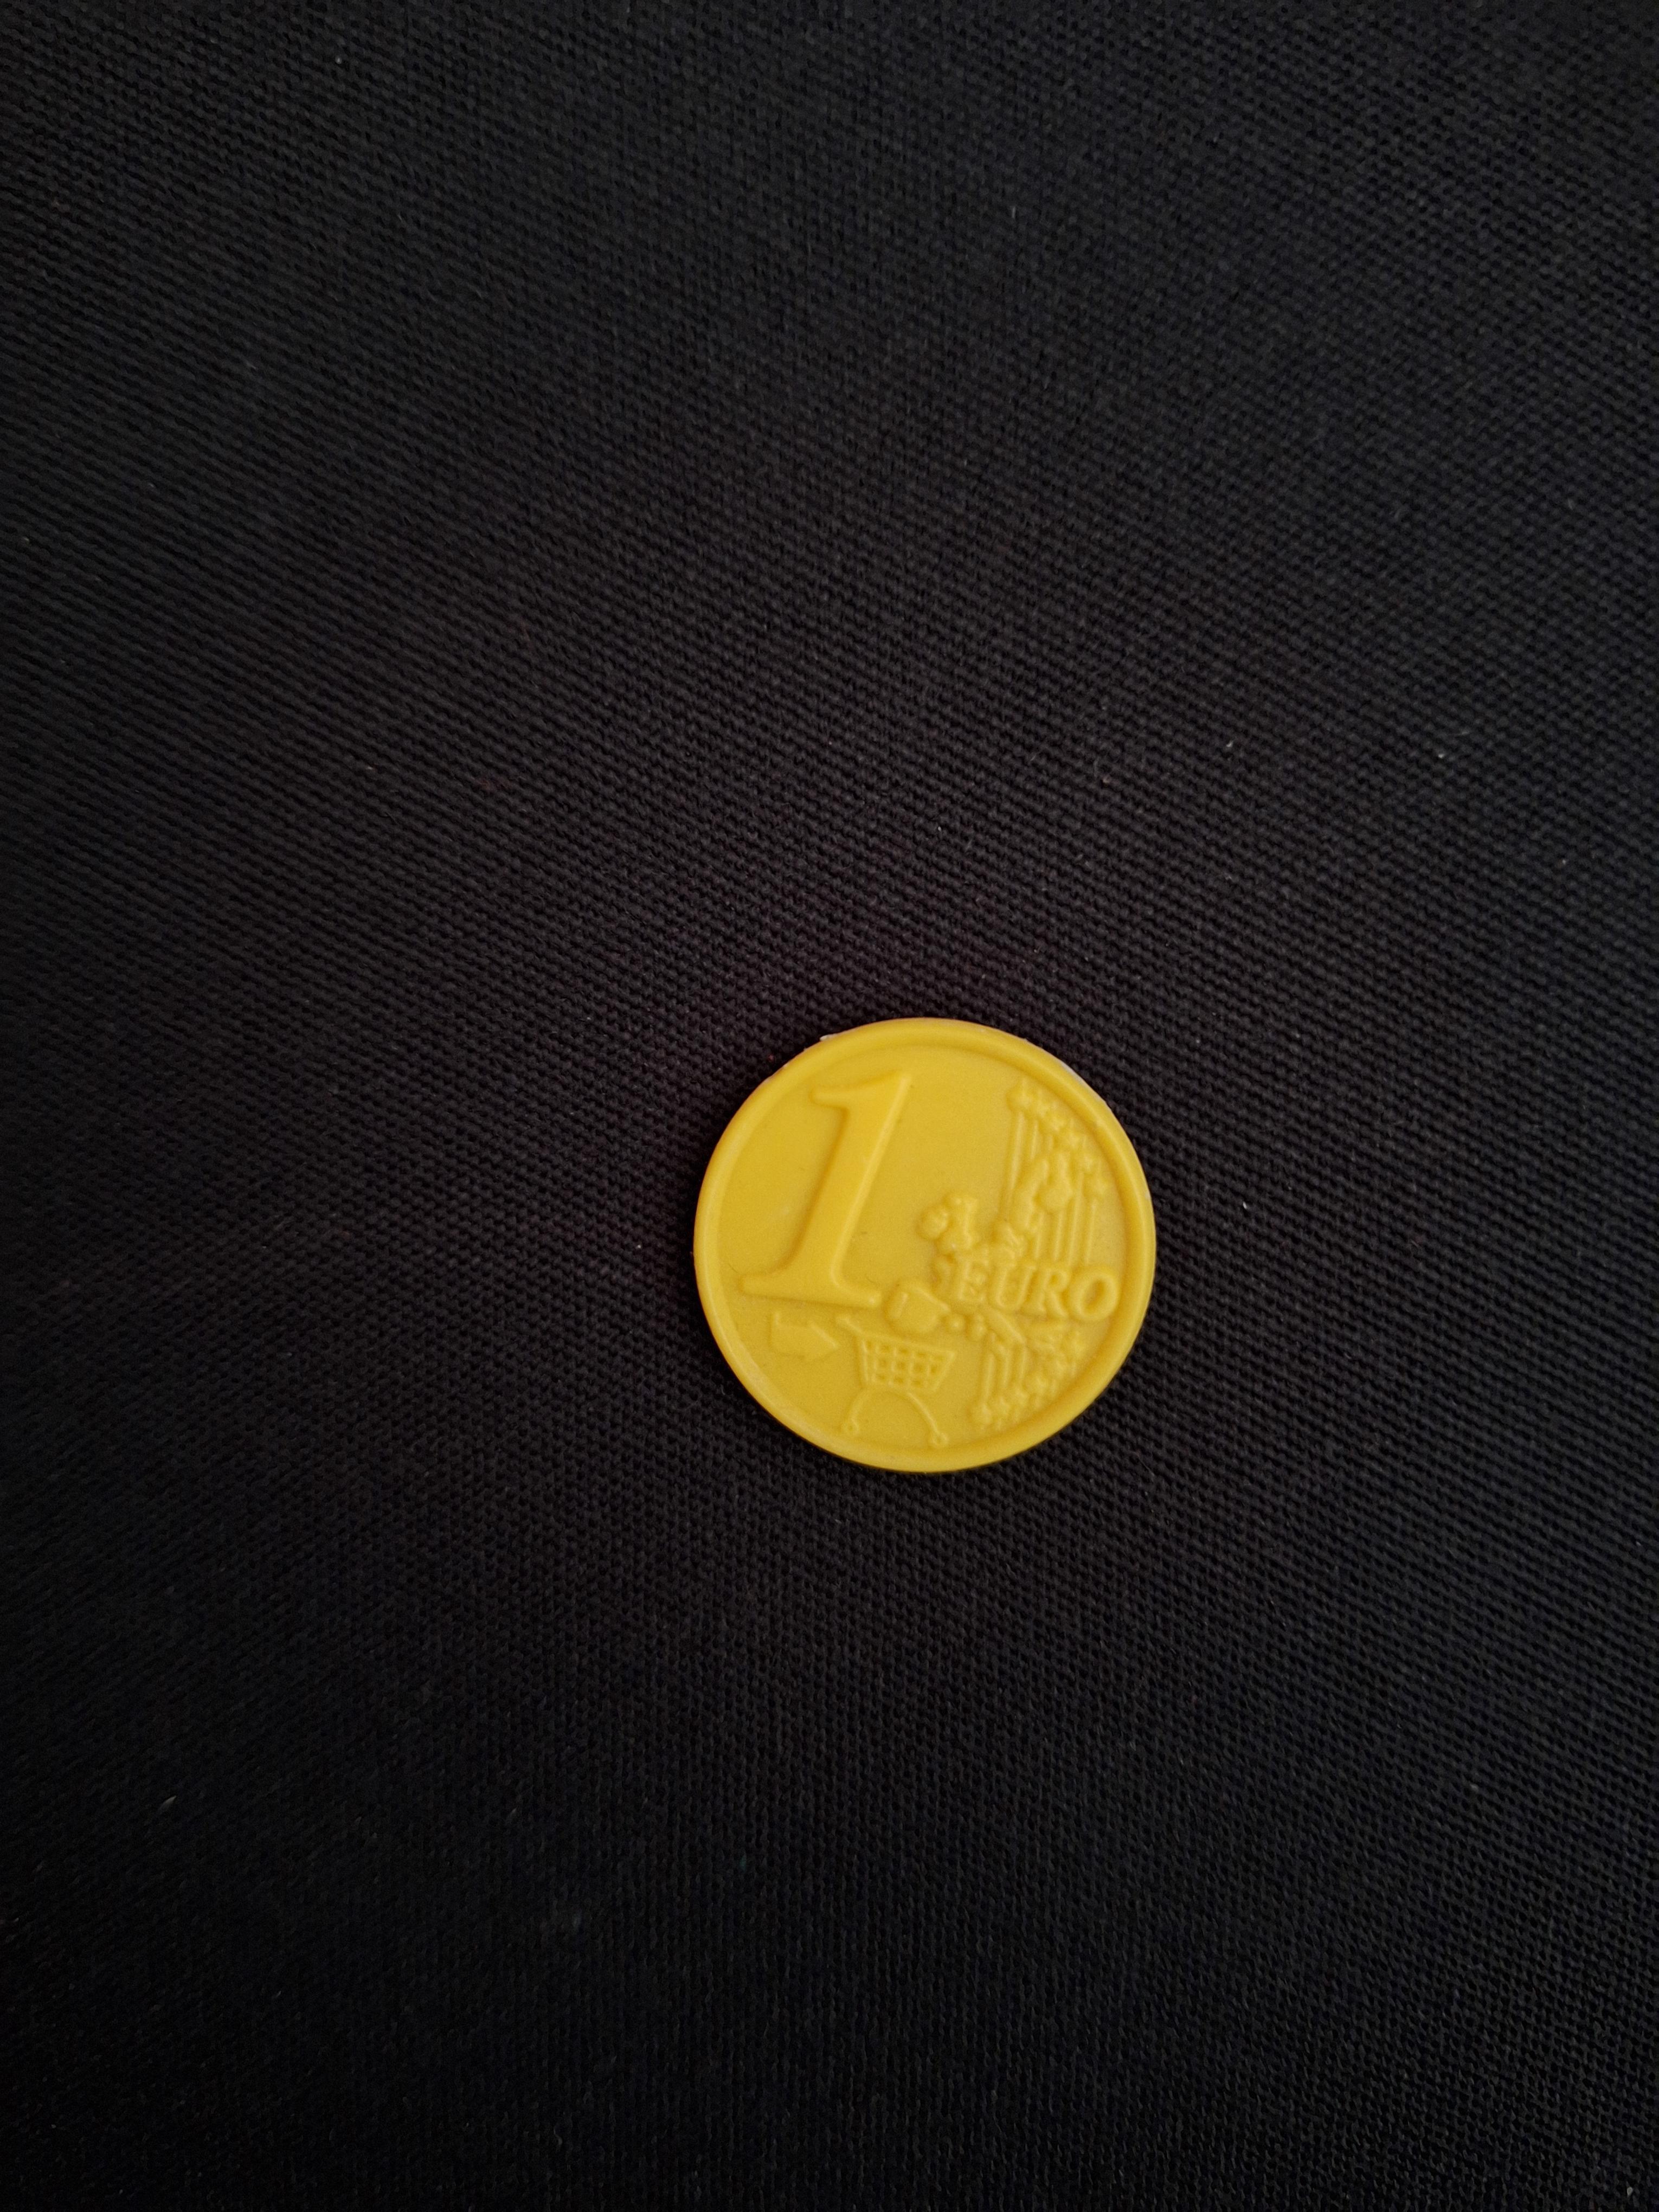 troc de troc jeton jaune euro en plastique image 0